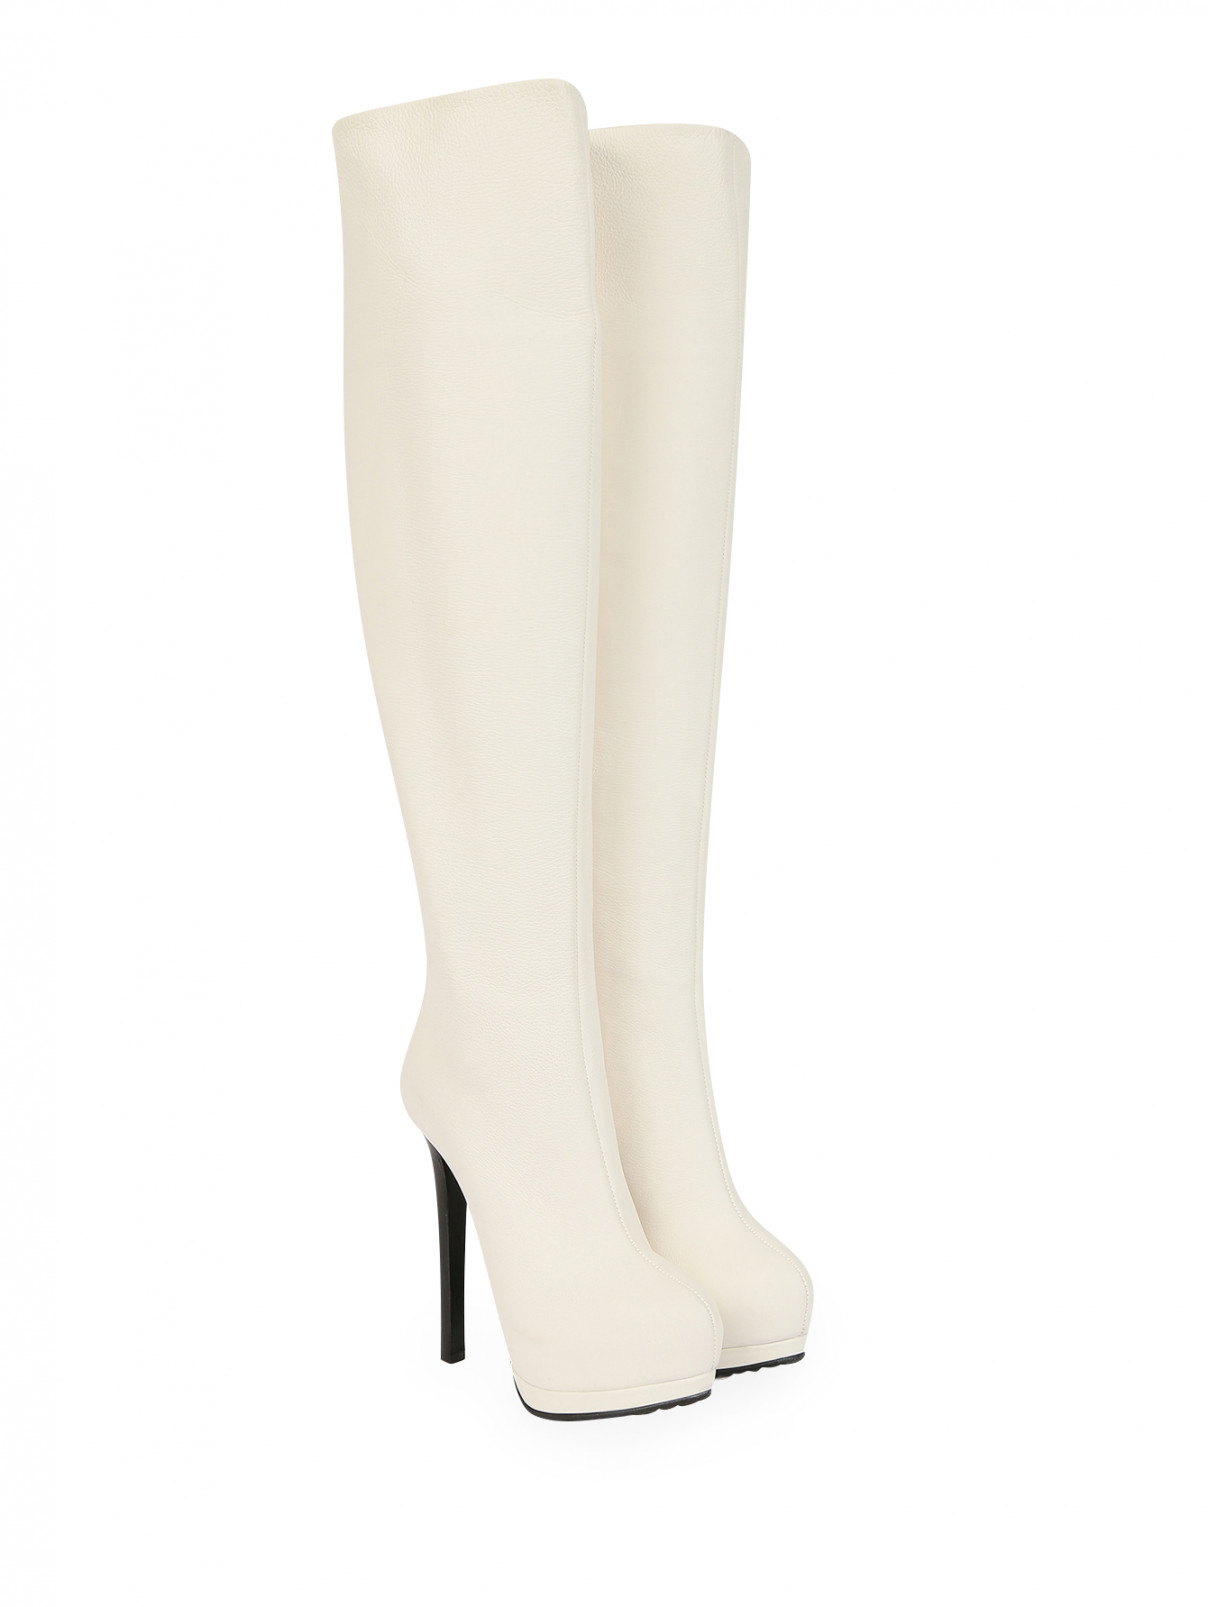 Сапоги-ботфорты из кожи на высоком каблуке и платформе Giuseppe Zanotti  –  Общий вид  – Цвет:  Белый